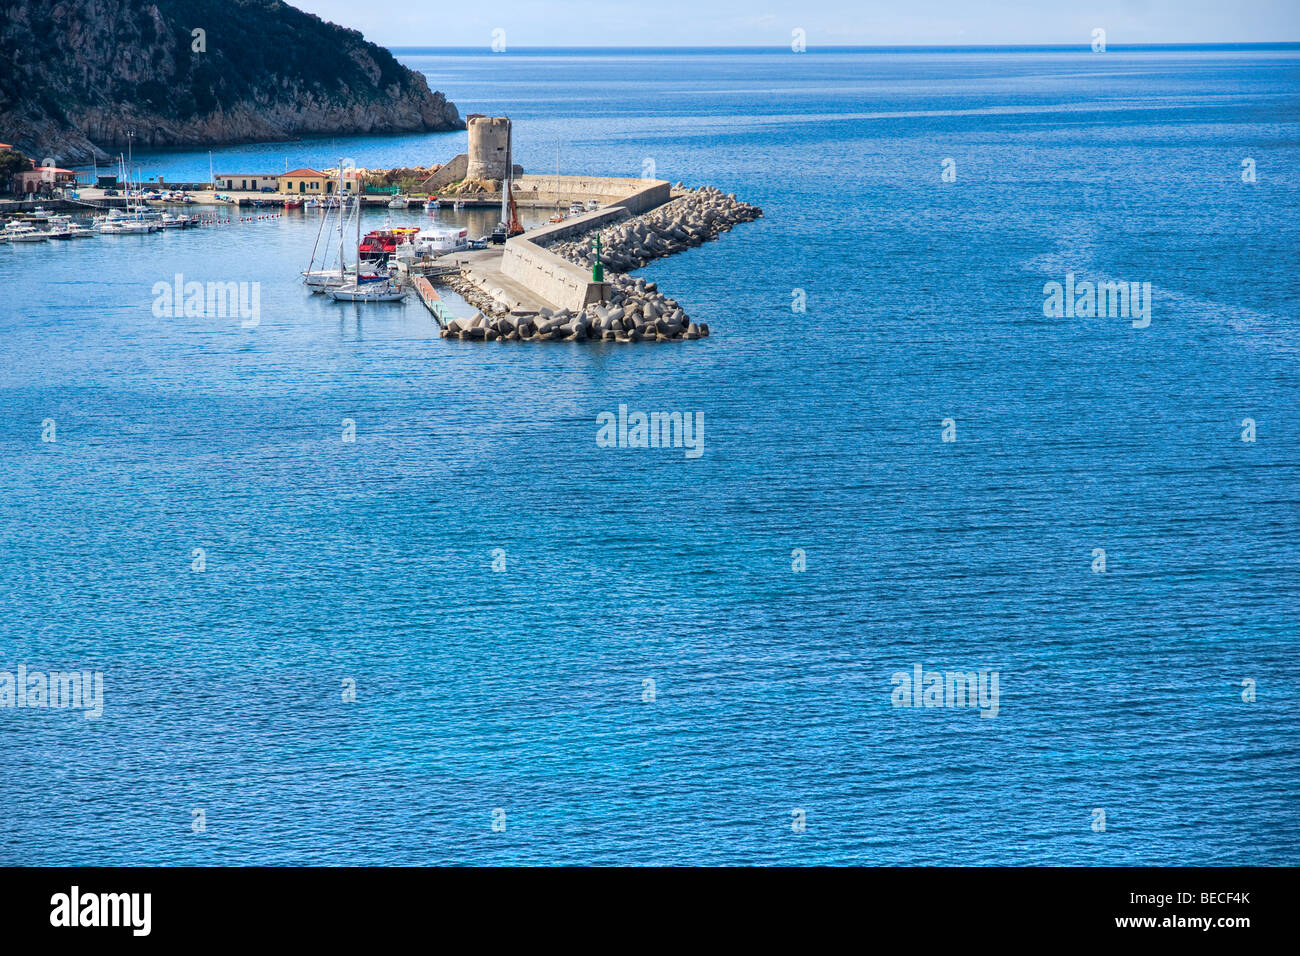 View of Marciana Marina, Isle of Elba, Livorno, Italy. Stock Photo